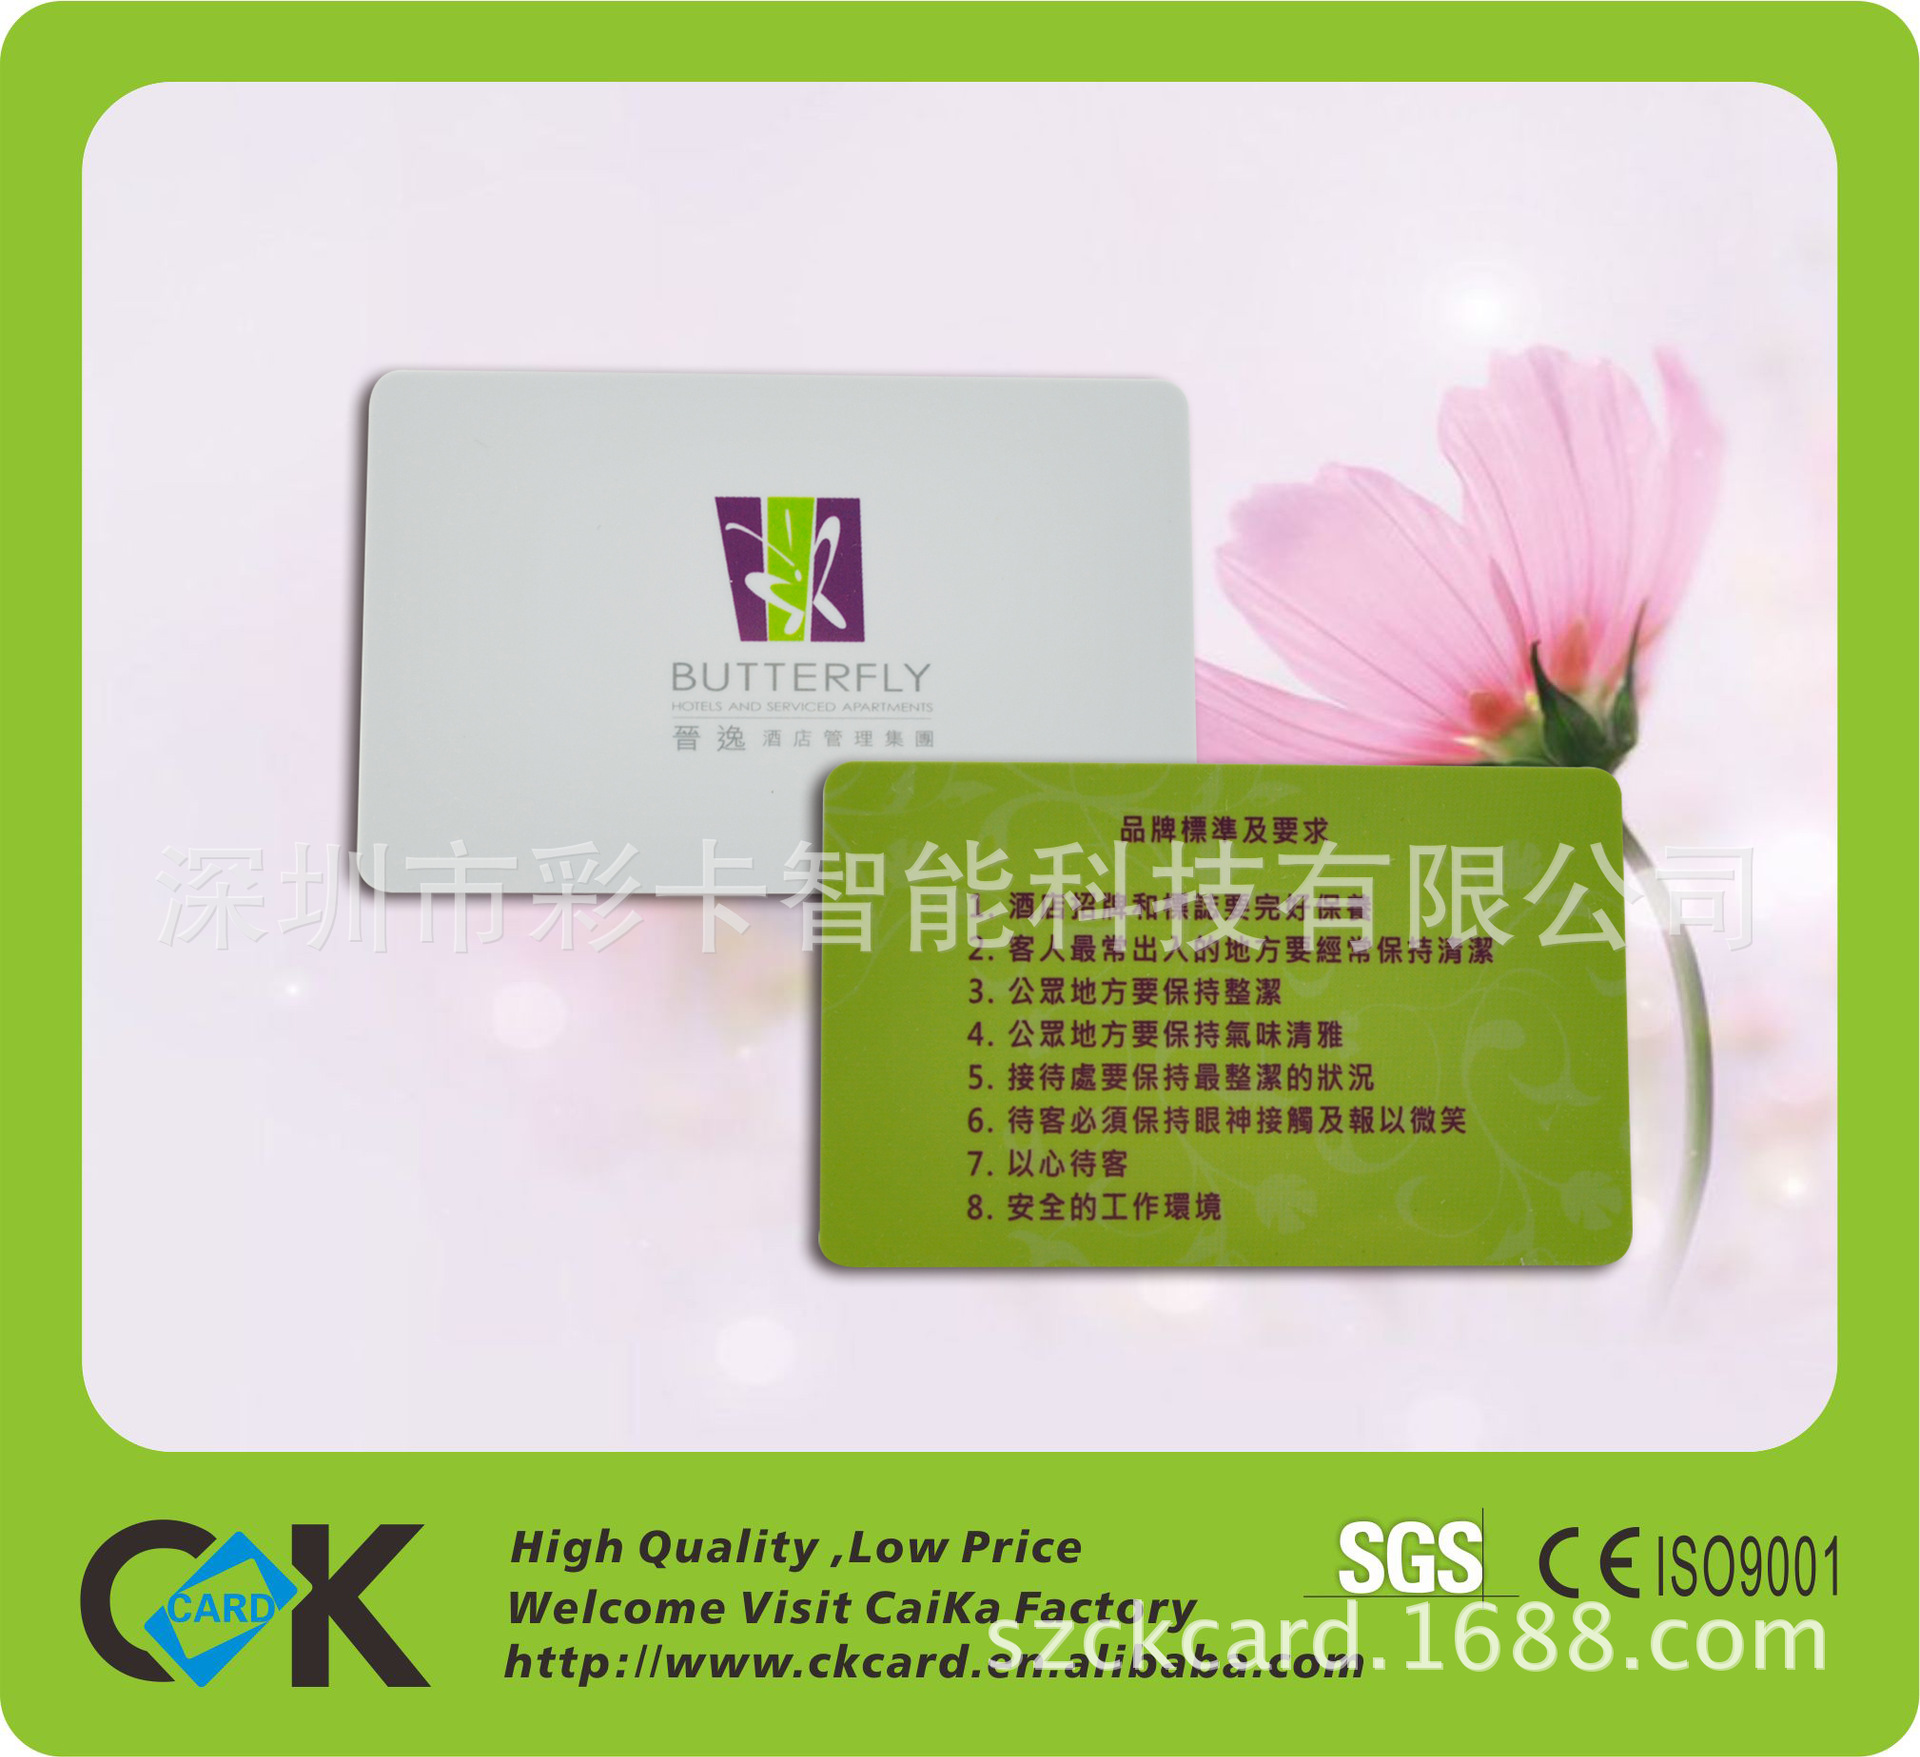 彩卡供应pvc卡,pvc塑料卡片印刷,卡片质量突出,价格合理